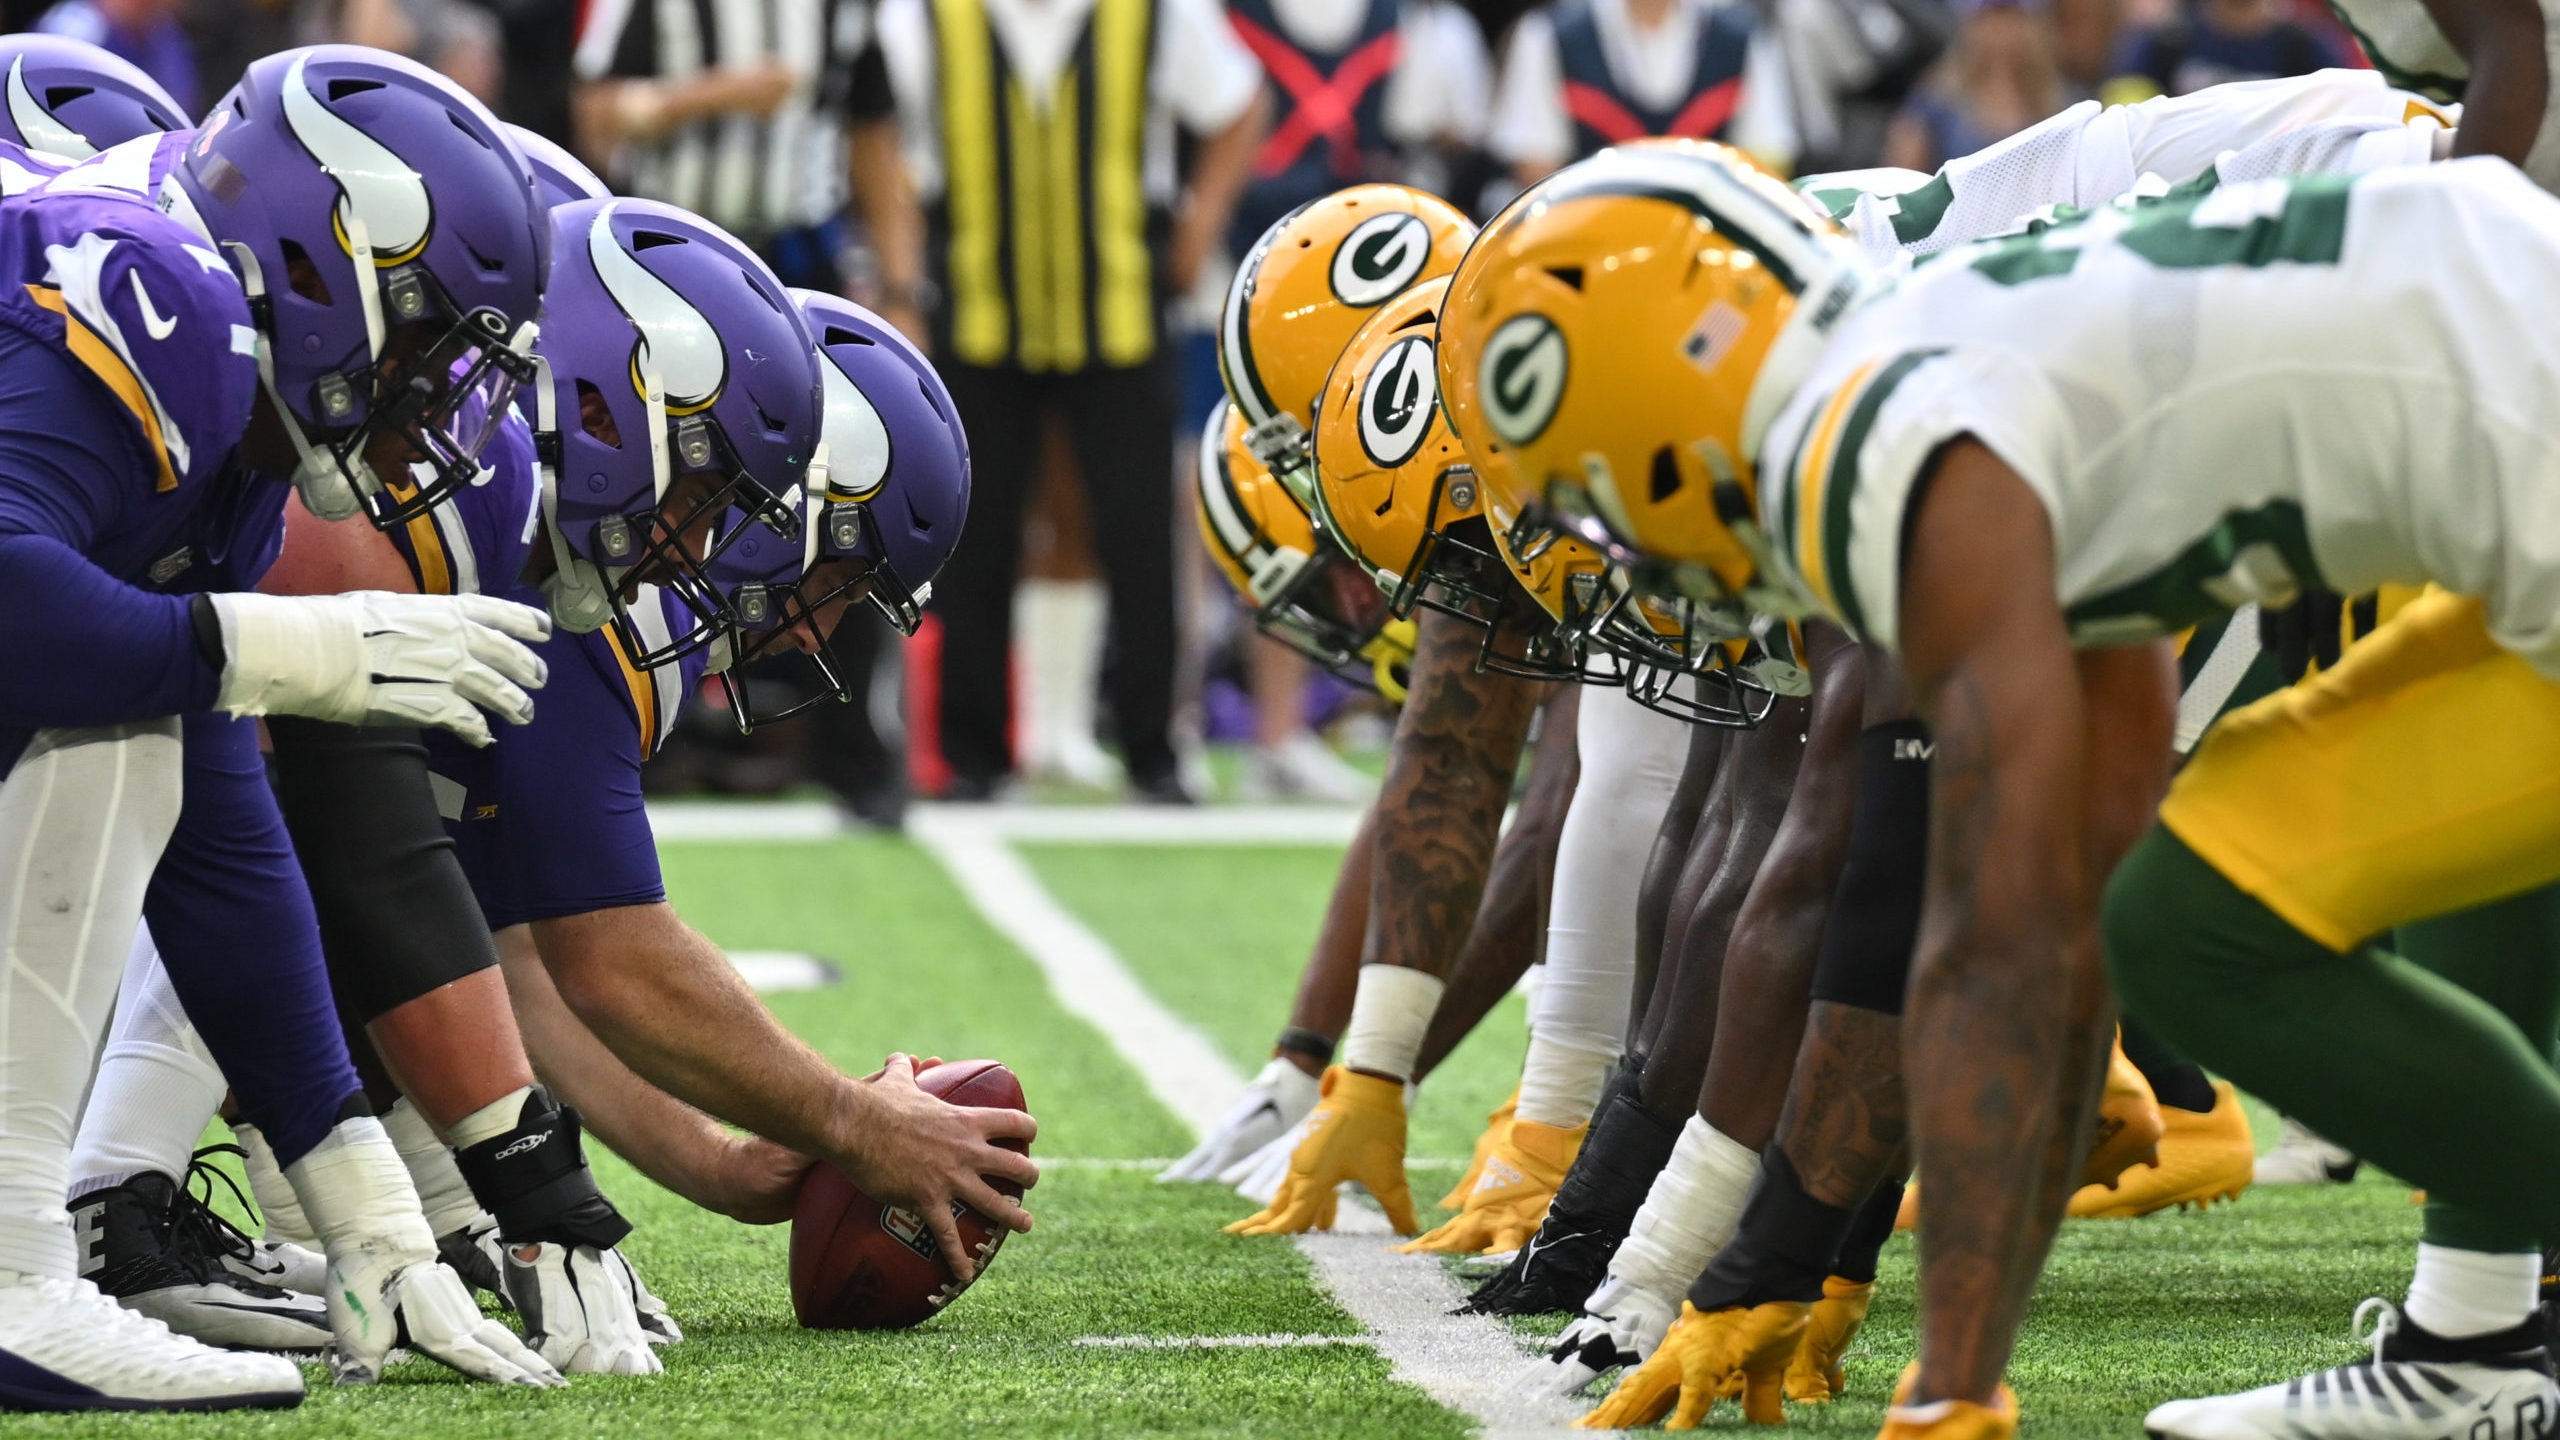 Vikings vs. Packers